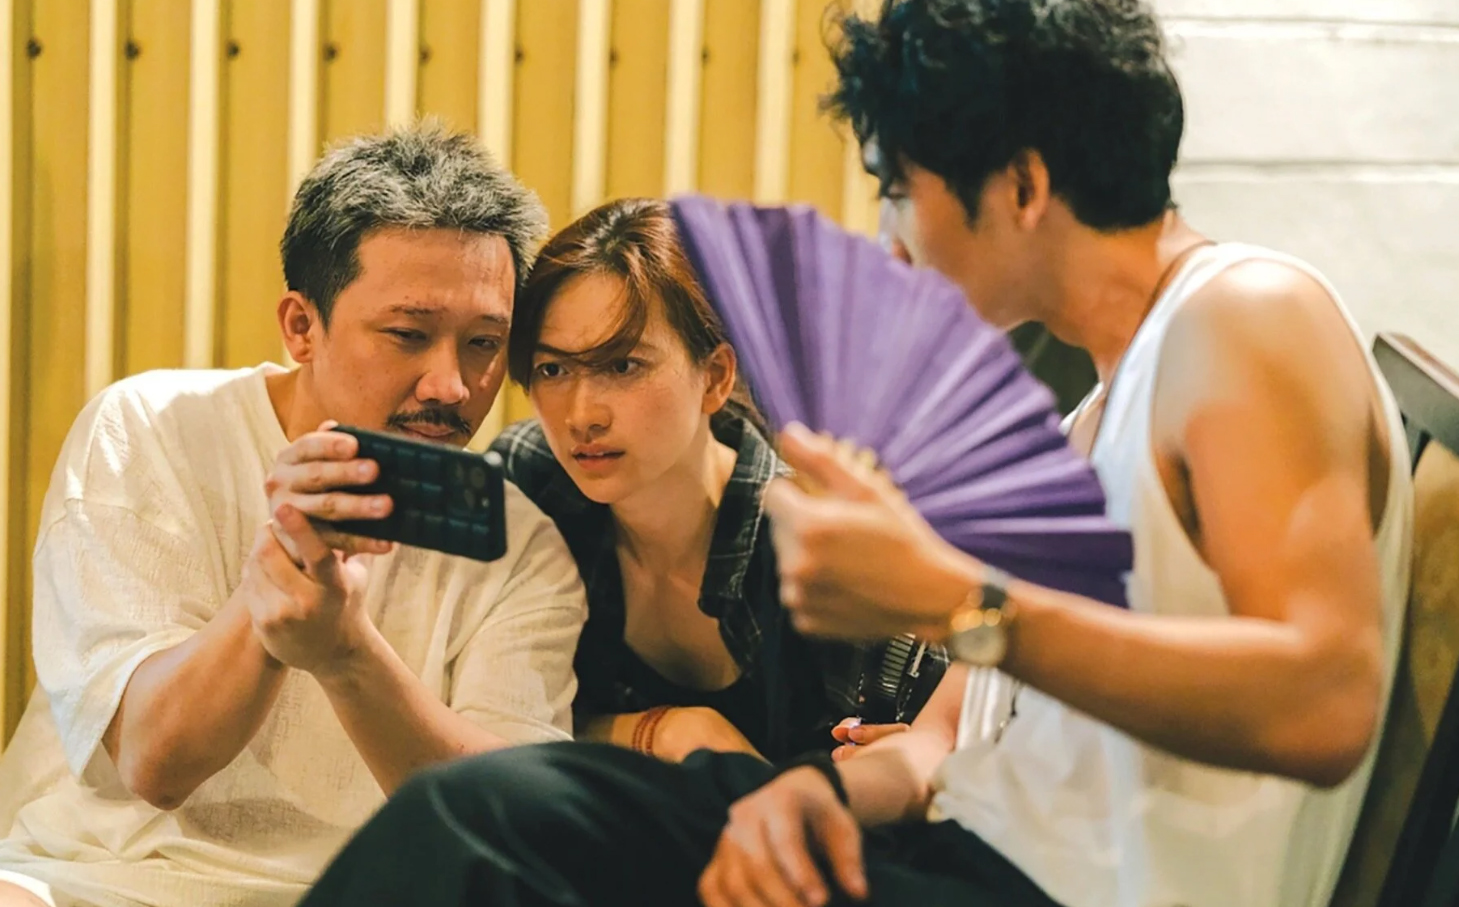 Bộ phim Mai của Trấn Thành vượt mốc 500 tỷ đồng doanh thu, phá kỷ lục phim Việt mọi thời đại